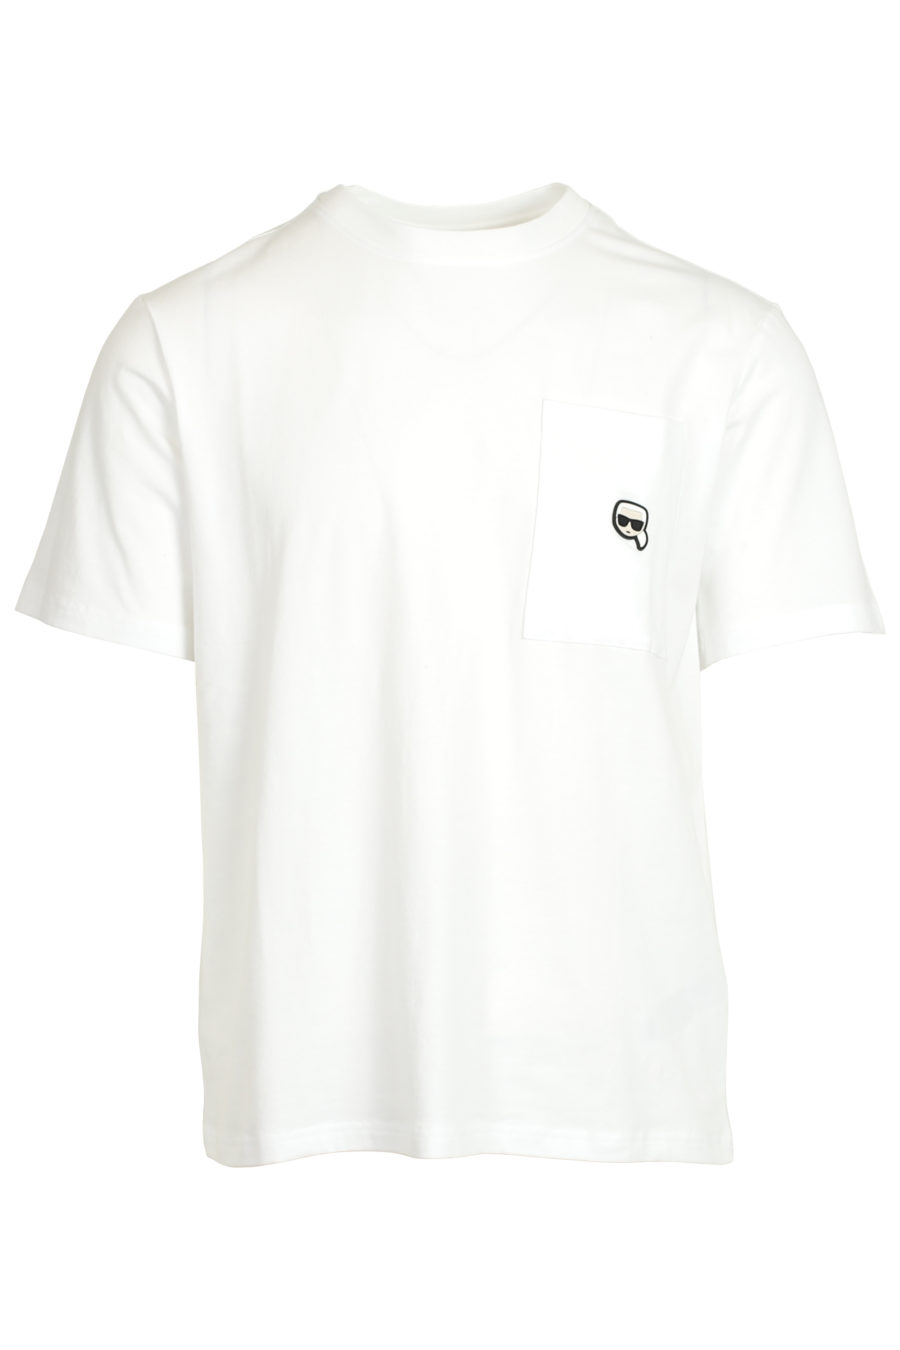 Set de pijama negro y blanco con logo en goma - IMG 3730